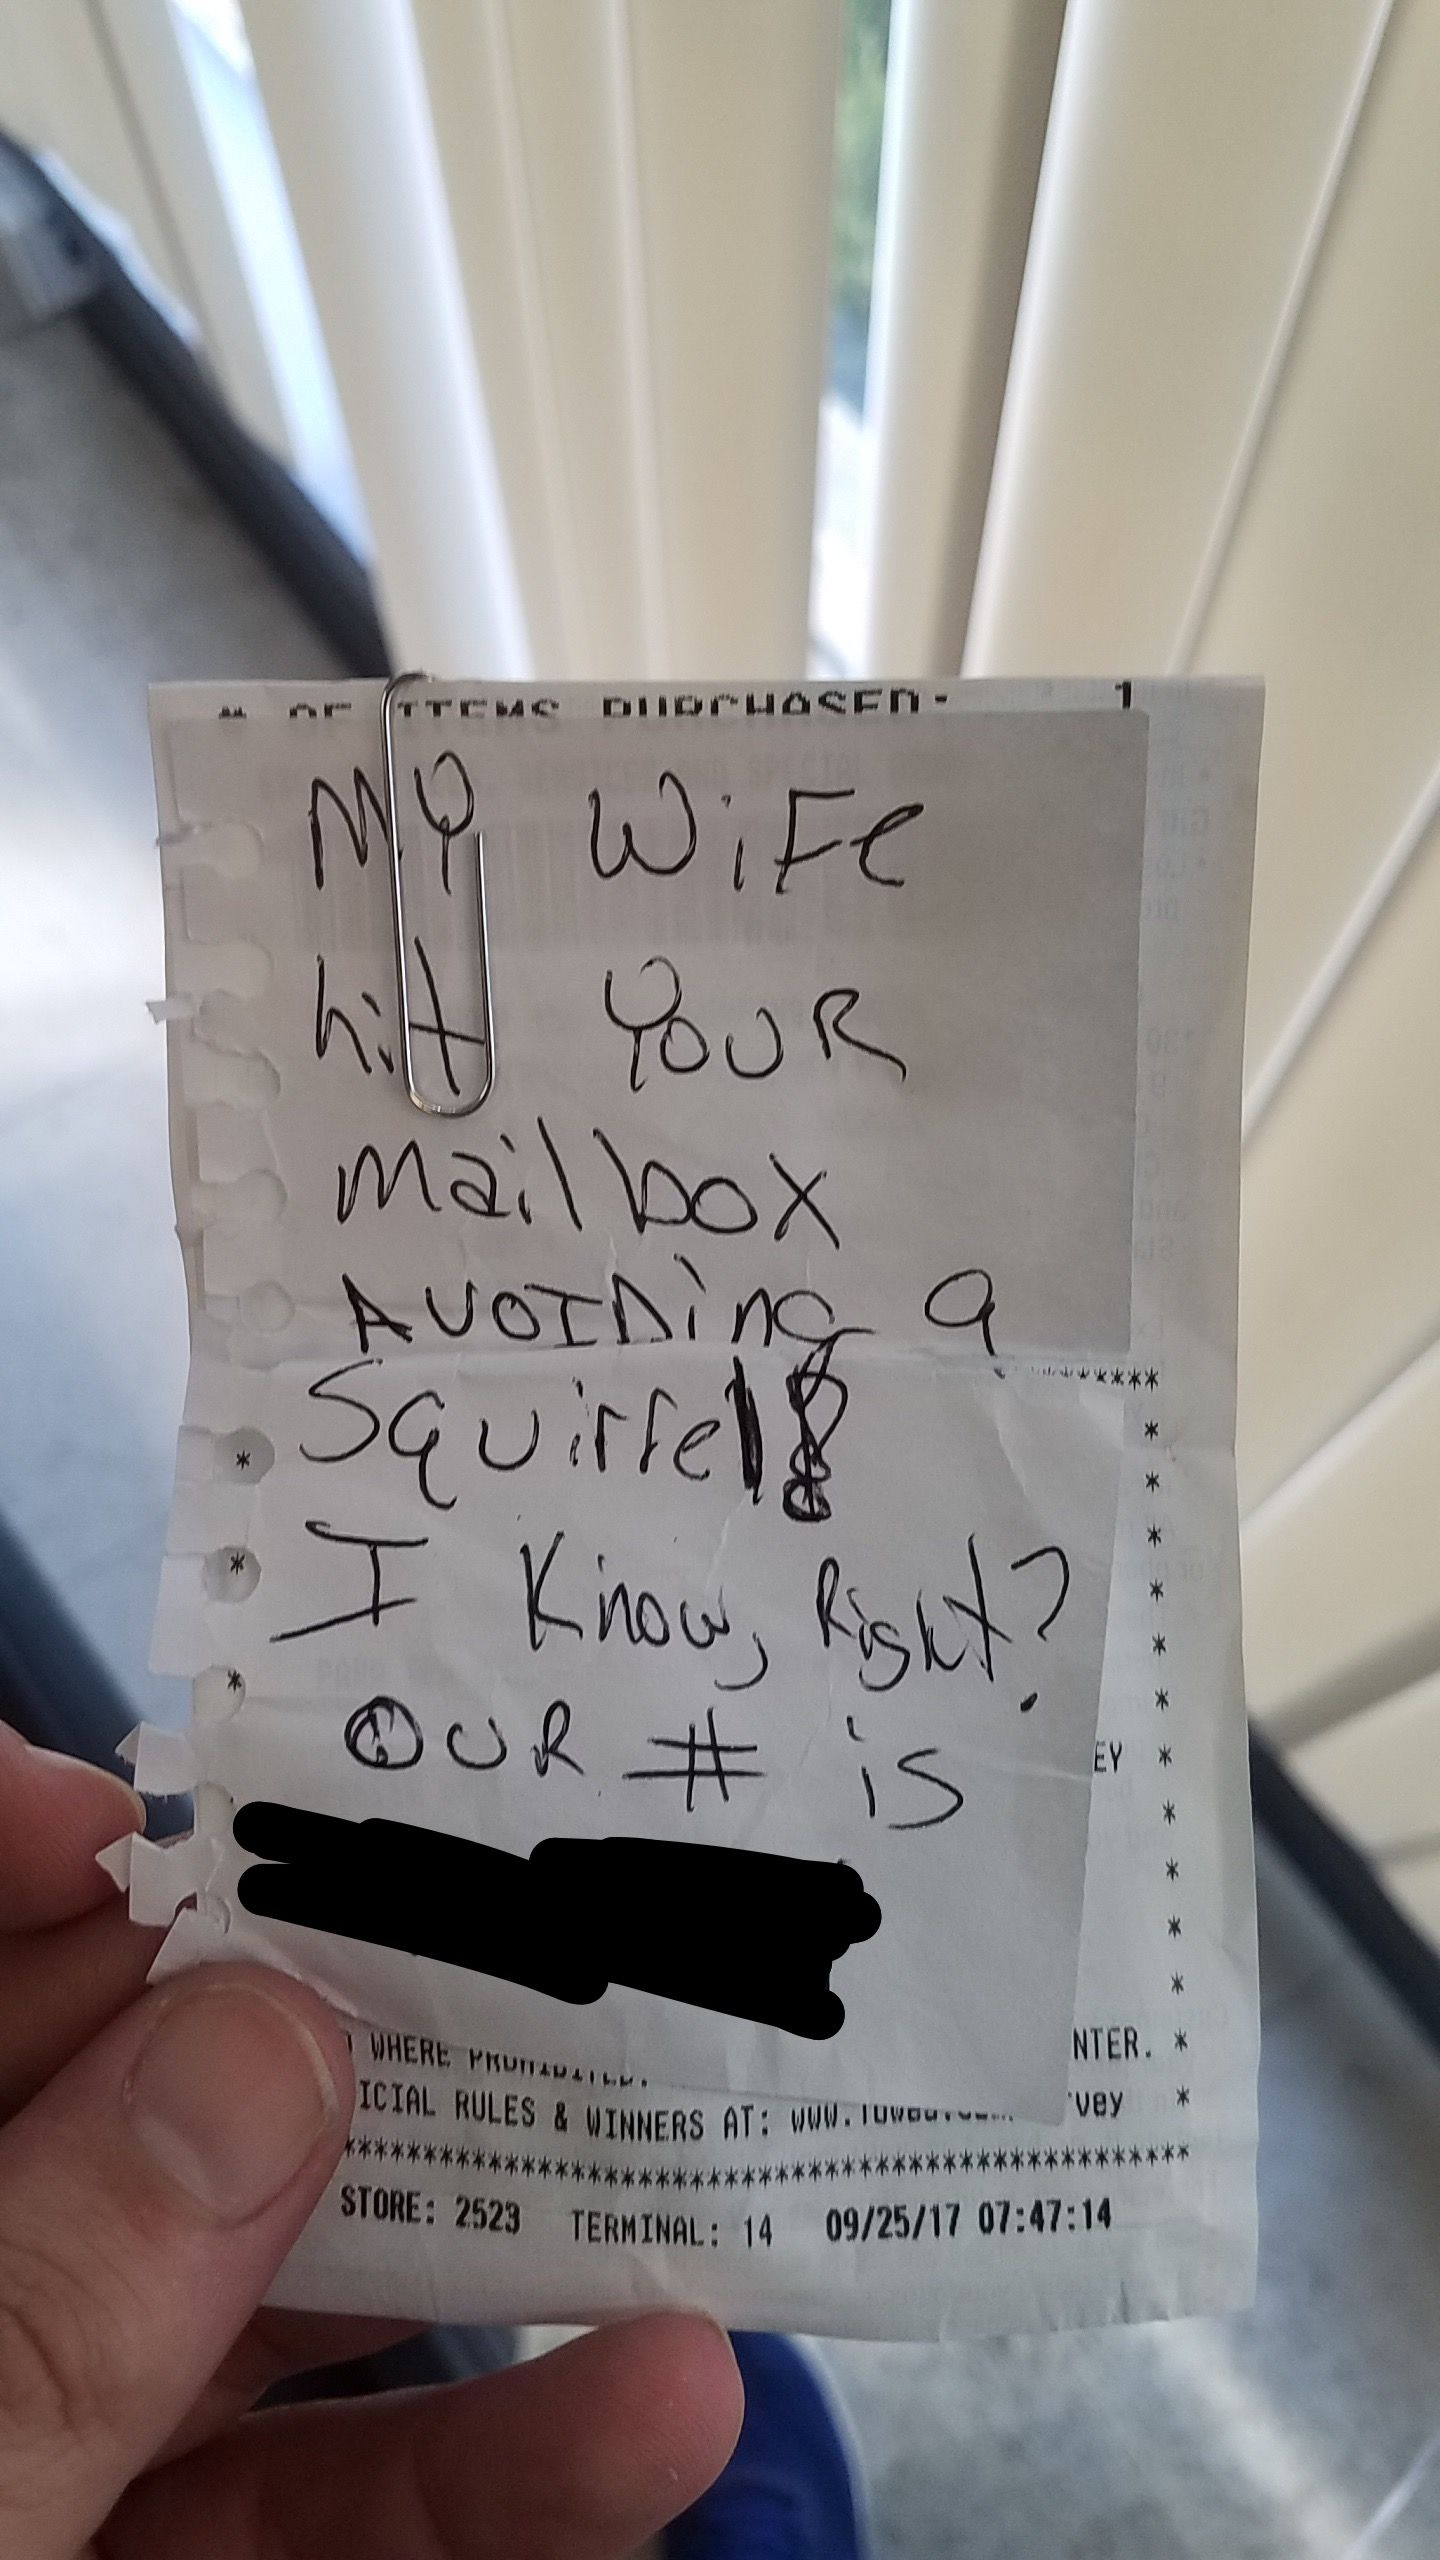 Mailbox damaged - Found this note